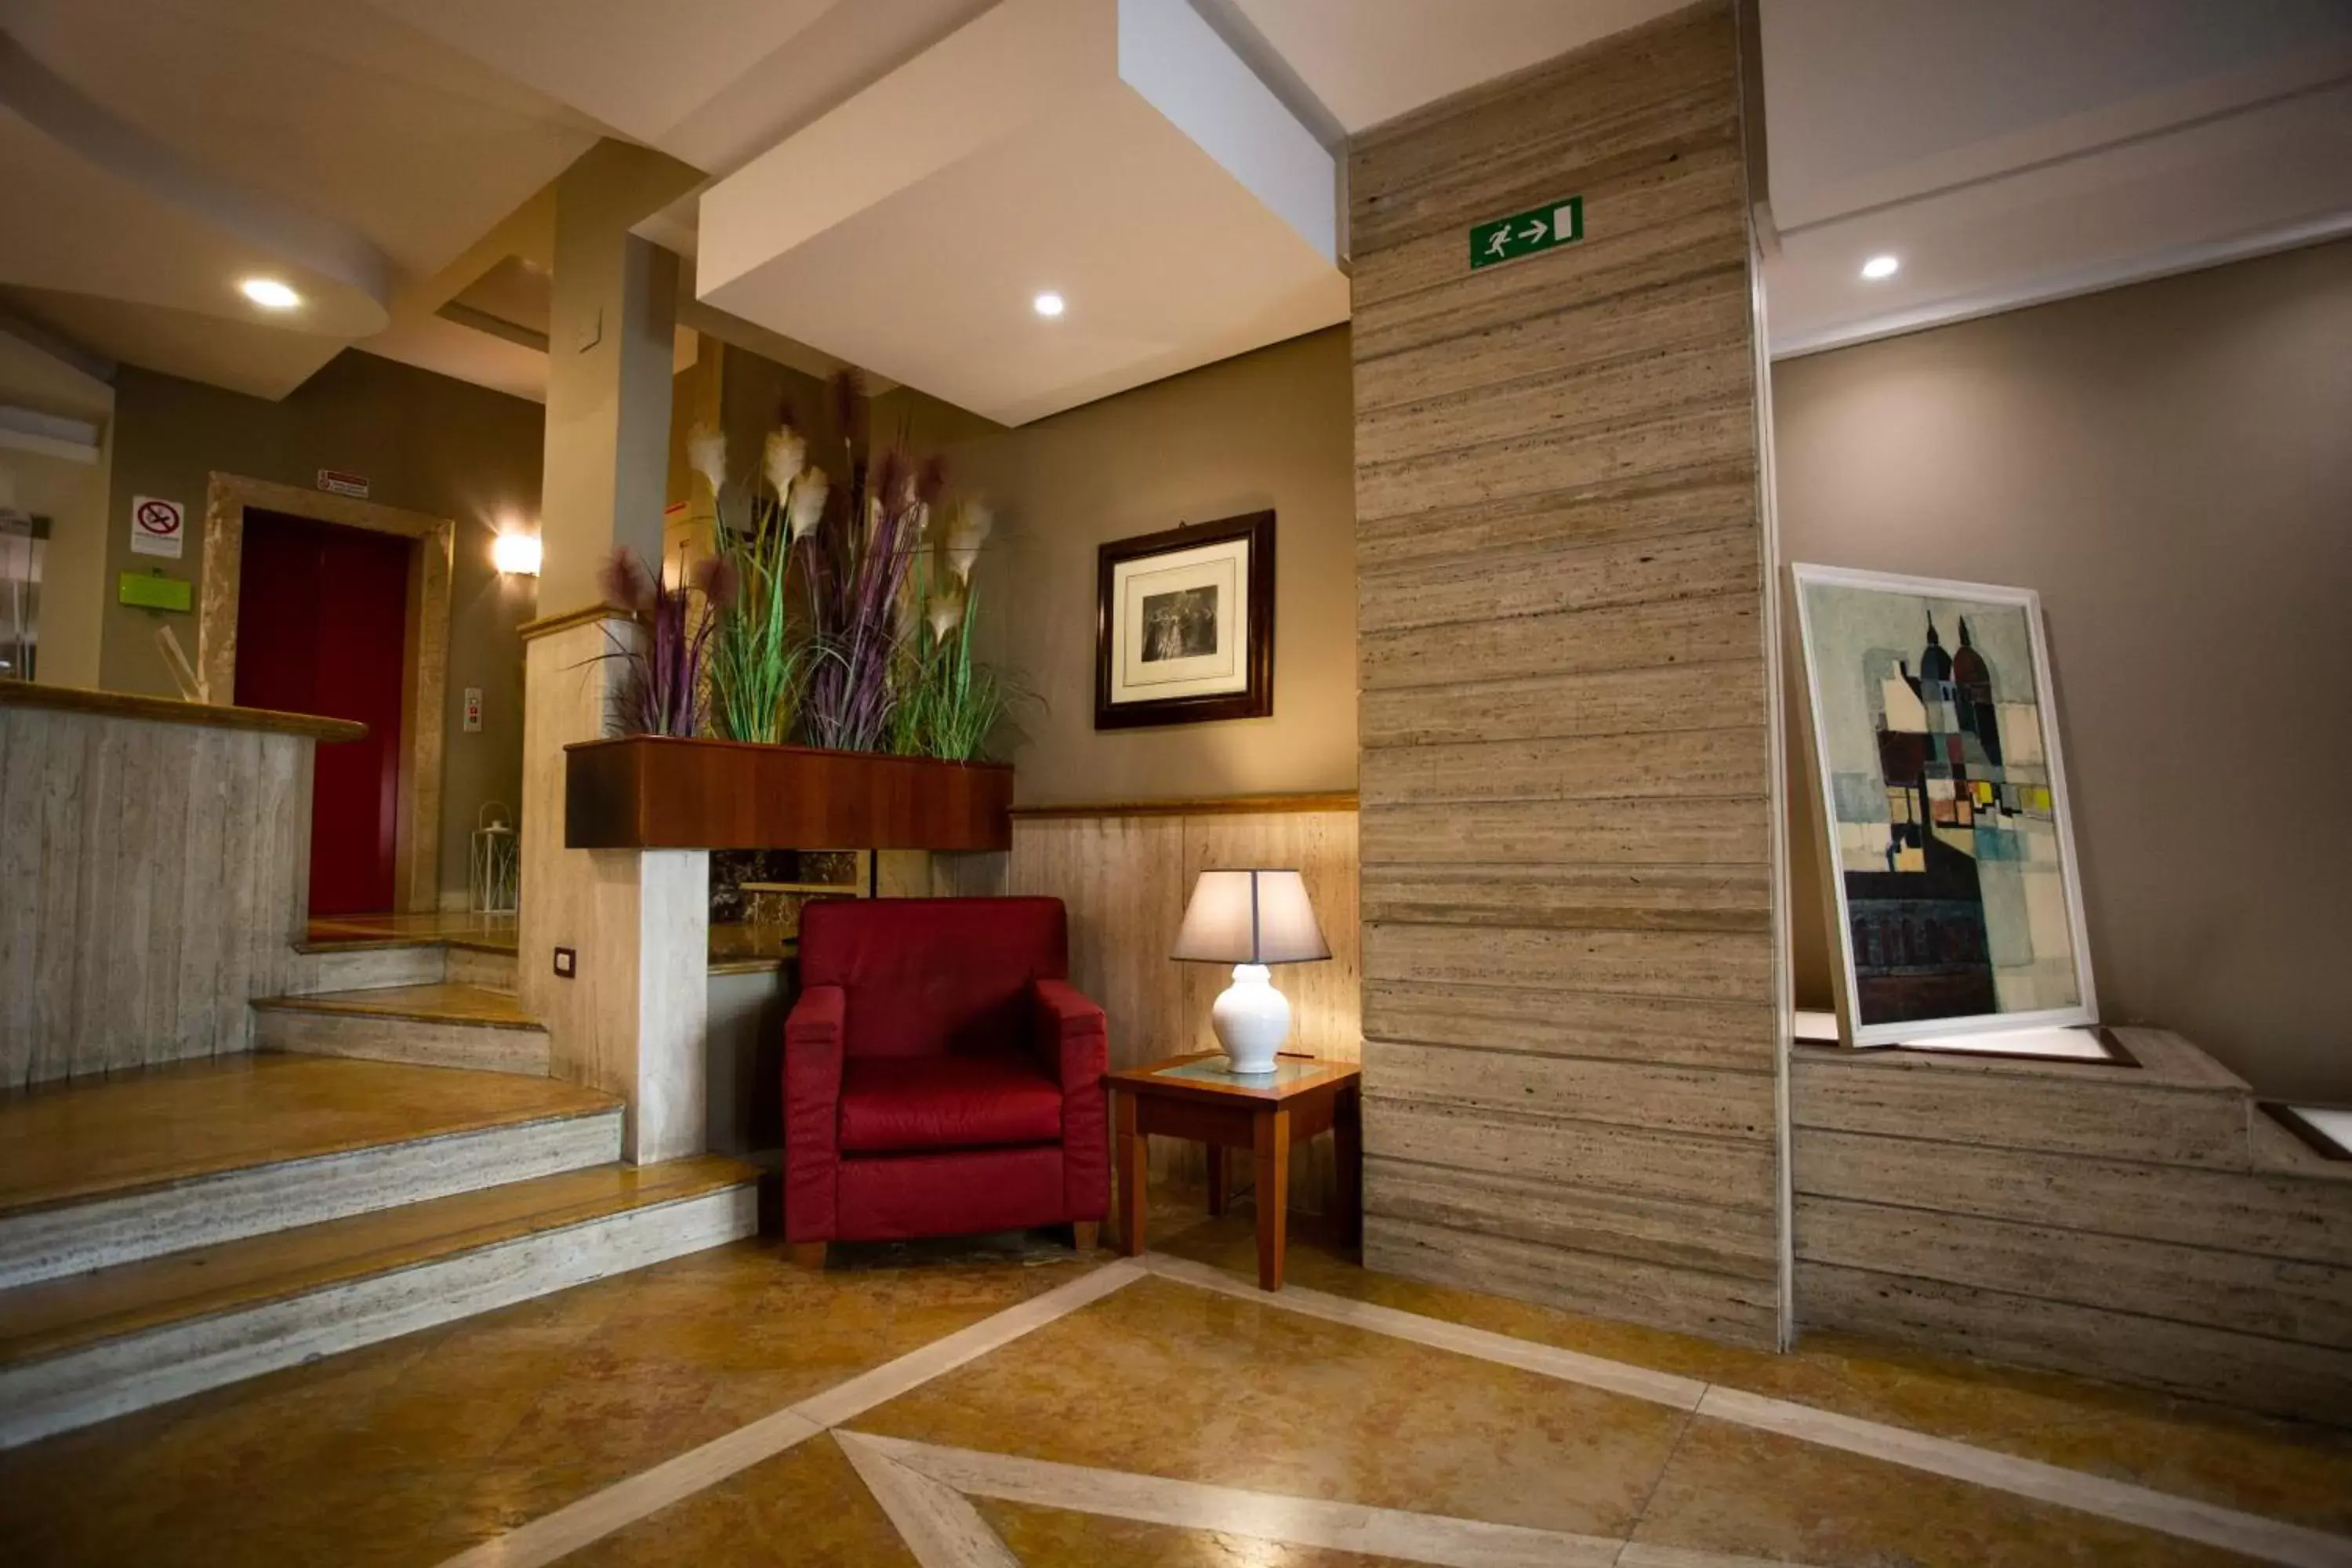 Lobby or reception, Lobby/Reception in Hotel Posta